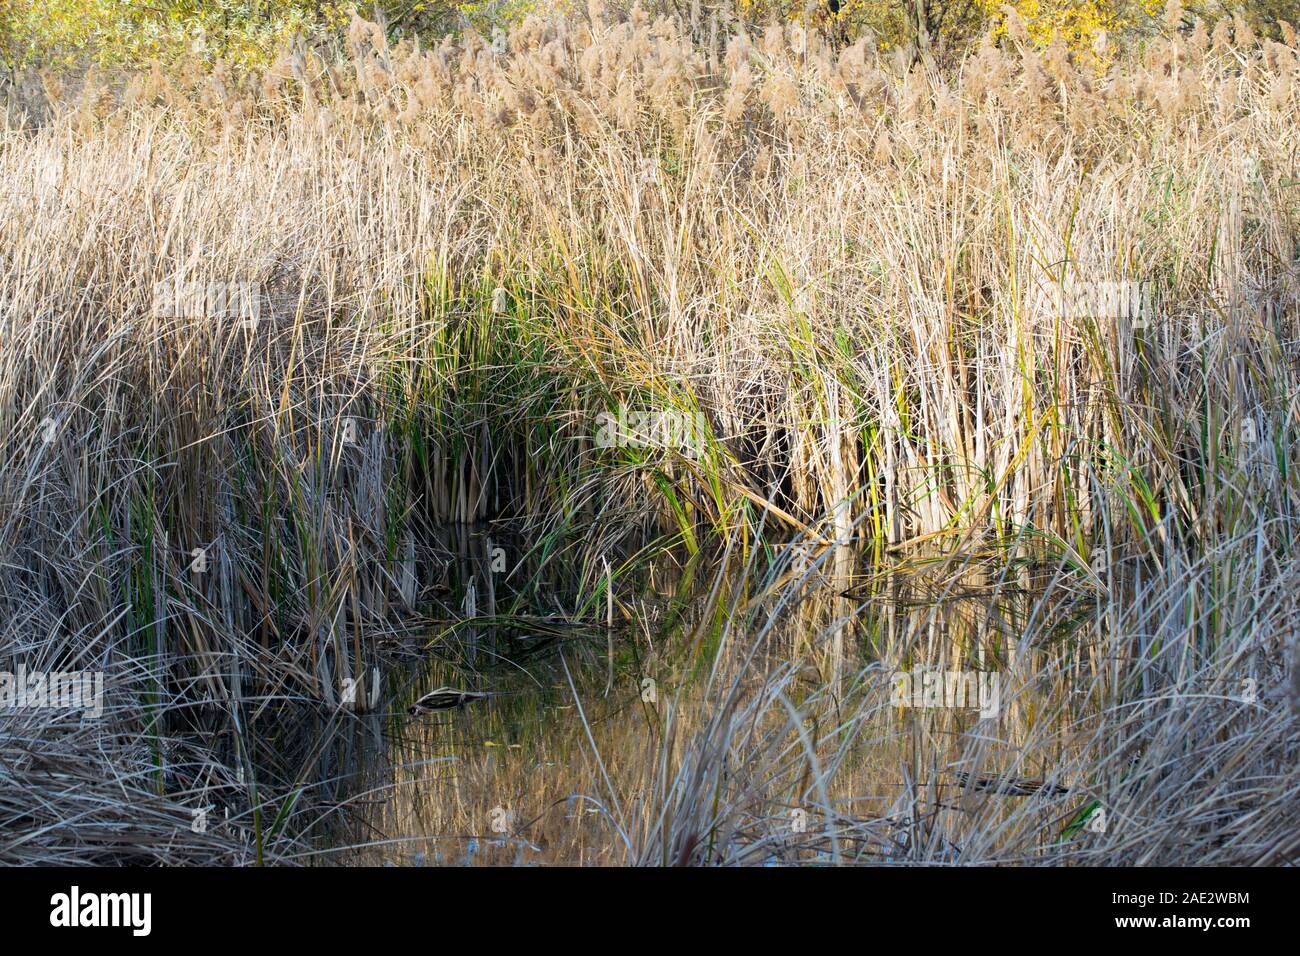 La nature en automne : un petit corps d'eau encore entouré de grands roseaux qui se développent en prolifération. Banque D'Images